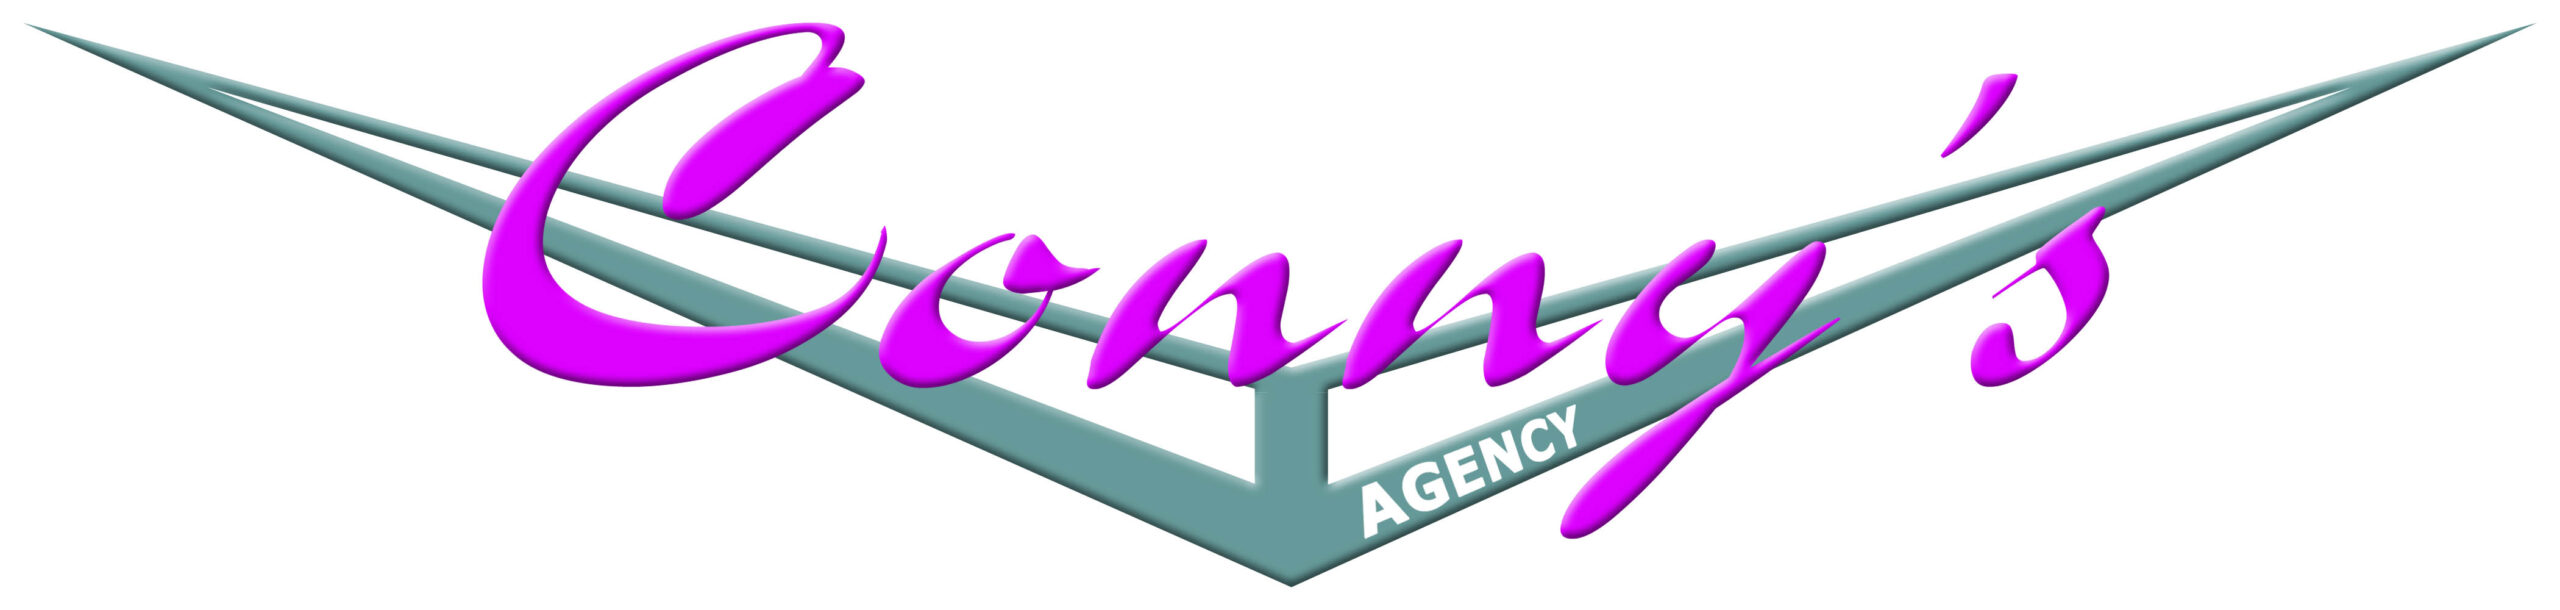 Connys Agency Oltimer Webpage